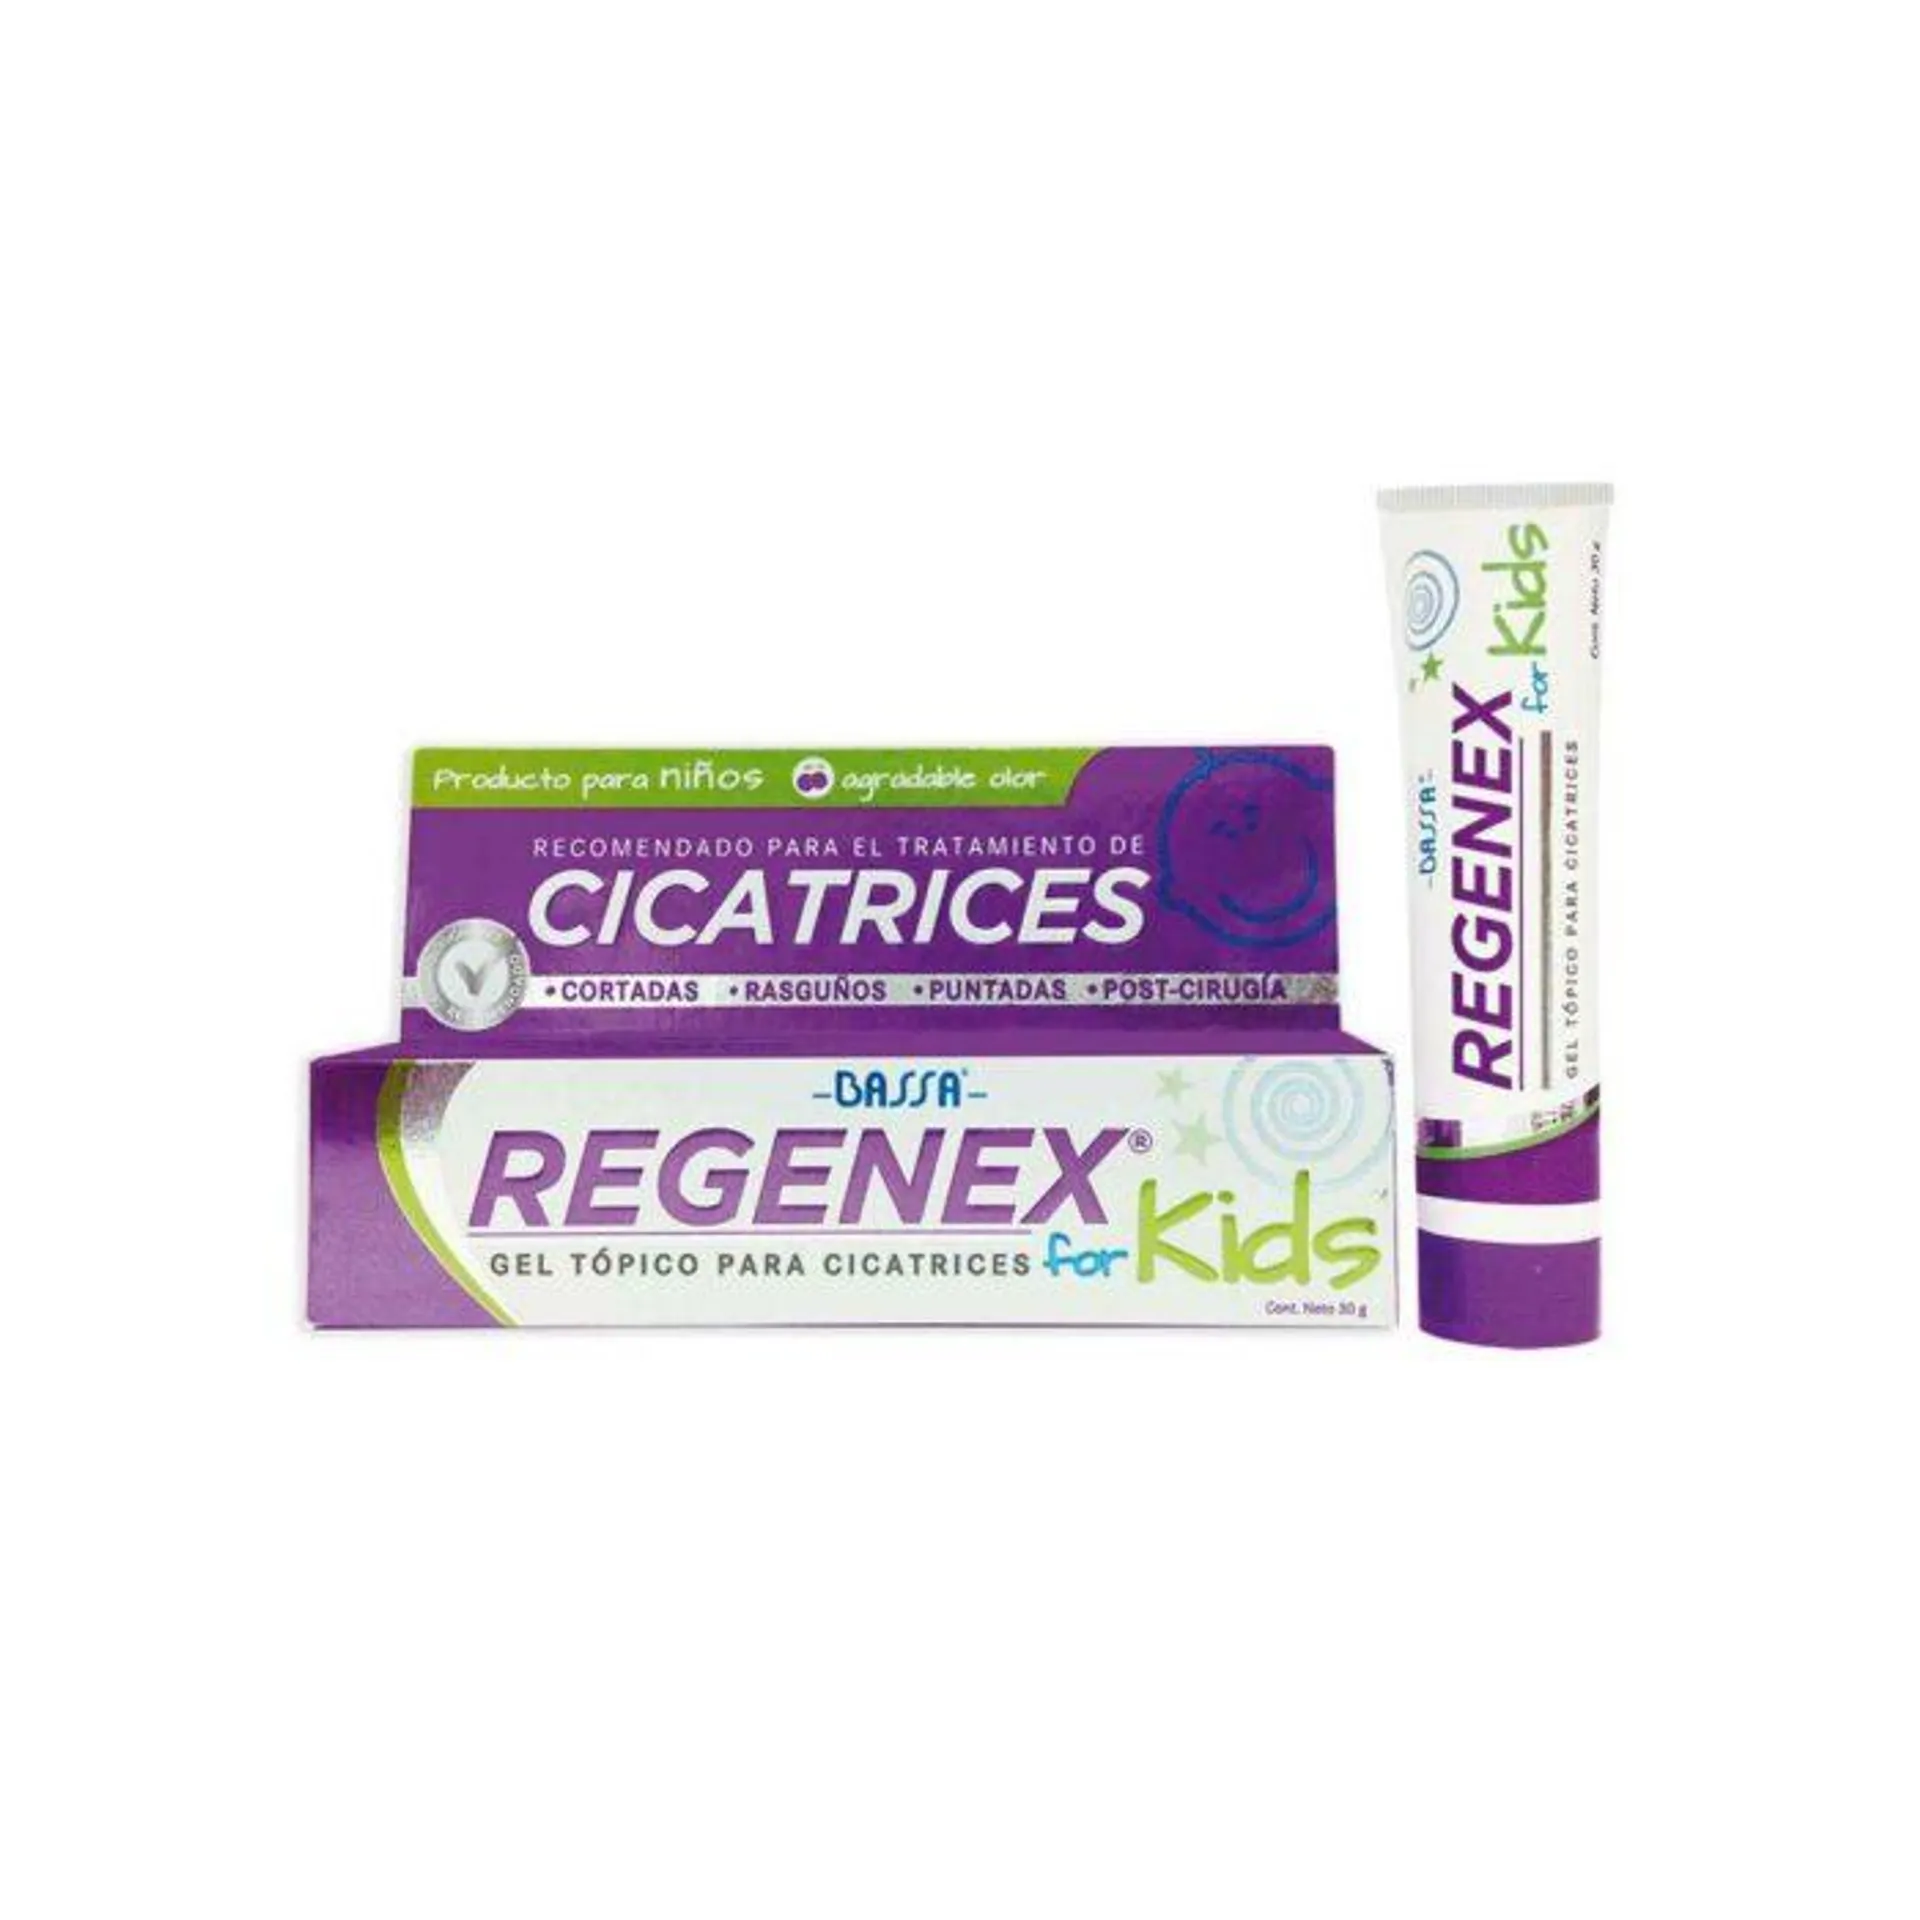 Regenex for Kids Gel Cicatrices